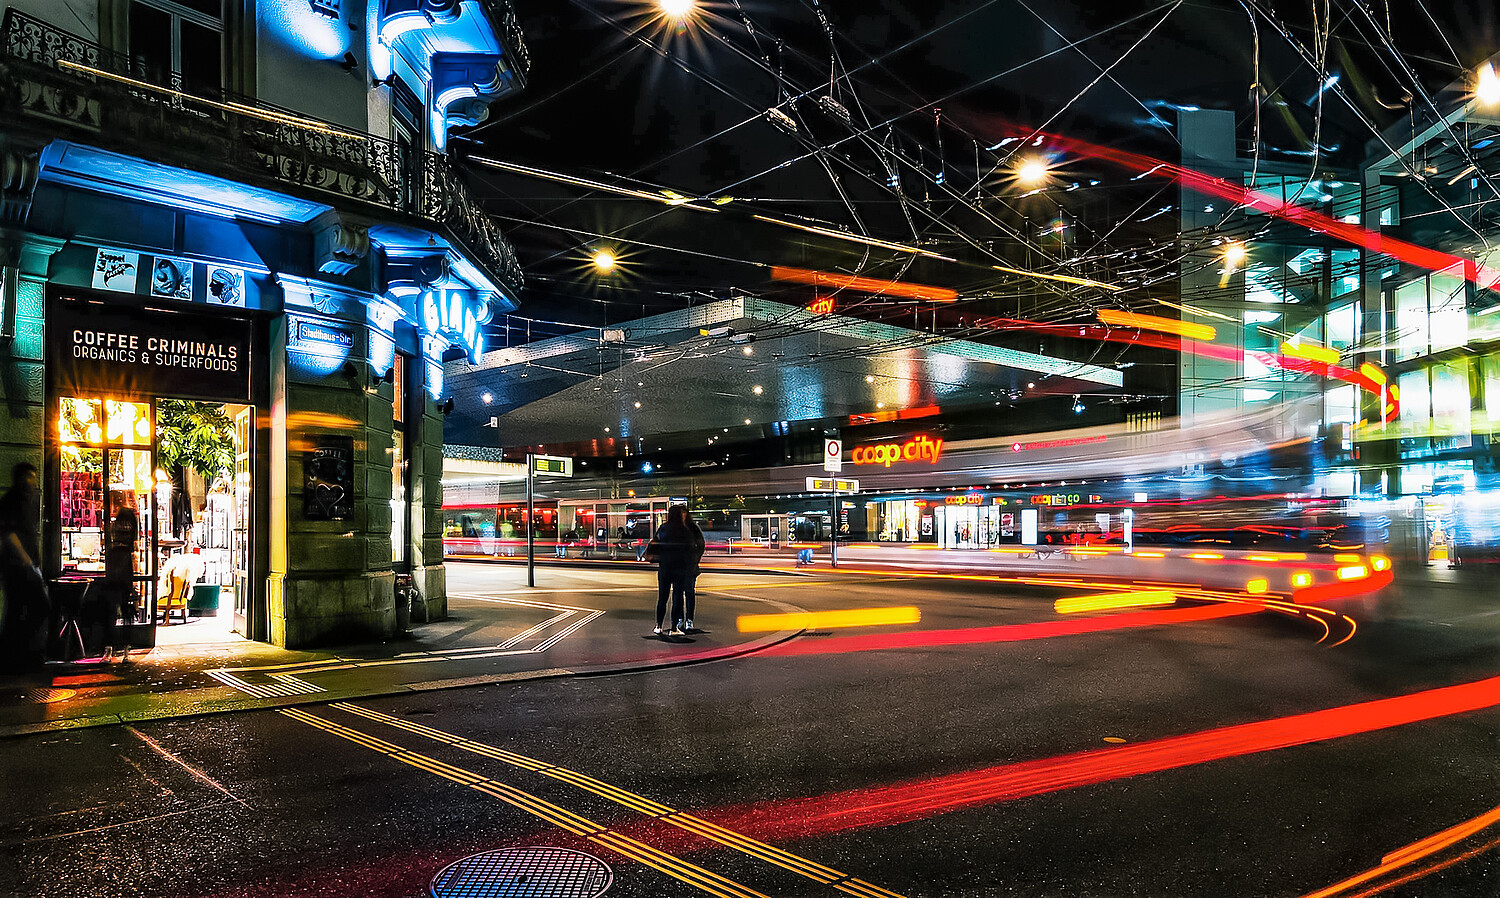 Ein hochanspruchsvoller Prozess: In Zukunft werden sich Städte immer mehr zu datengetriebenen Stadtsystemen transformieren, wo Technologien, Infrastrukturen und Menschen verbunden sind und zusammenspielen (im Bild: Bahnhofplatz Winterthur).